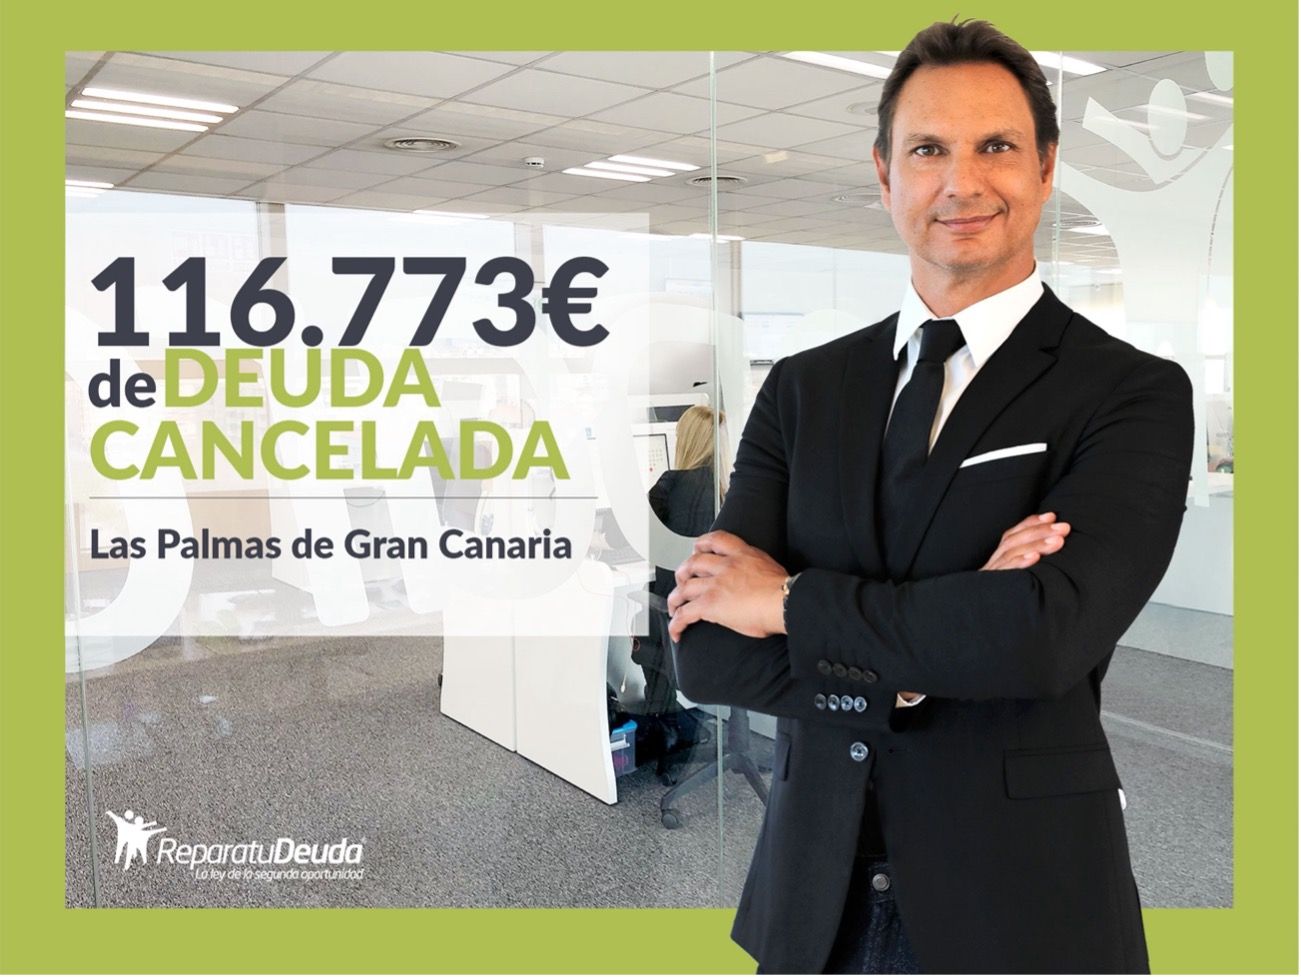 Repara tu Deuda Abogados cancela 116.773 ? en Las Palmas de Gran Canaria con la Ley de Segunda Oportunidad